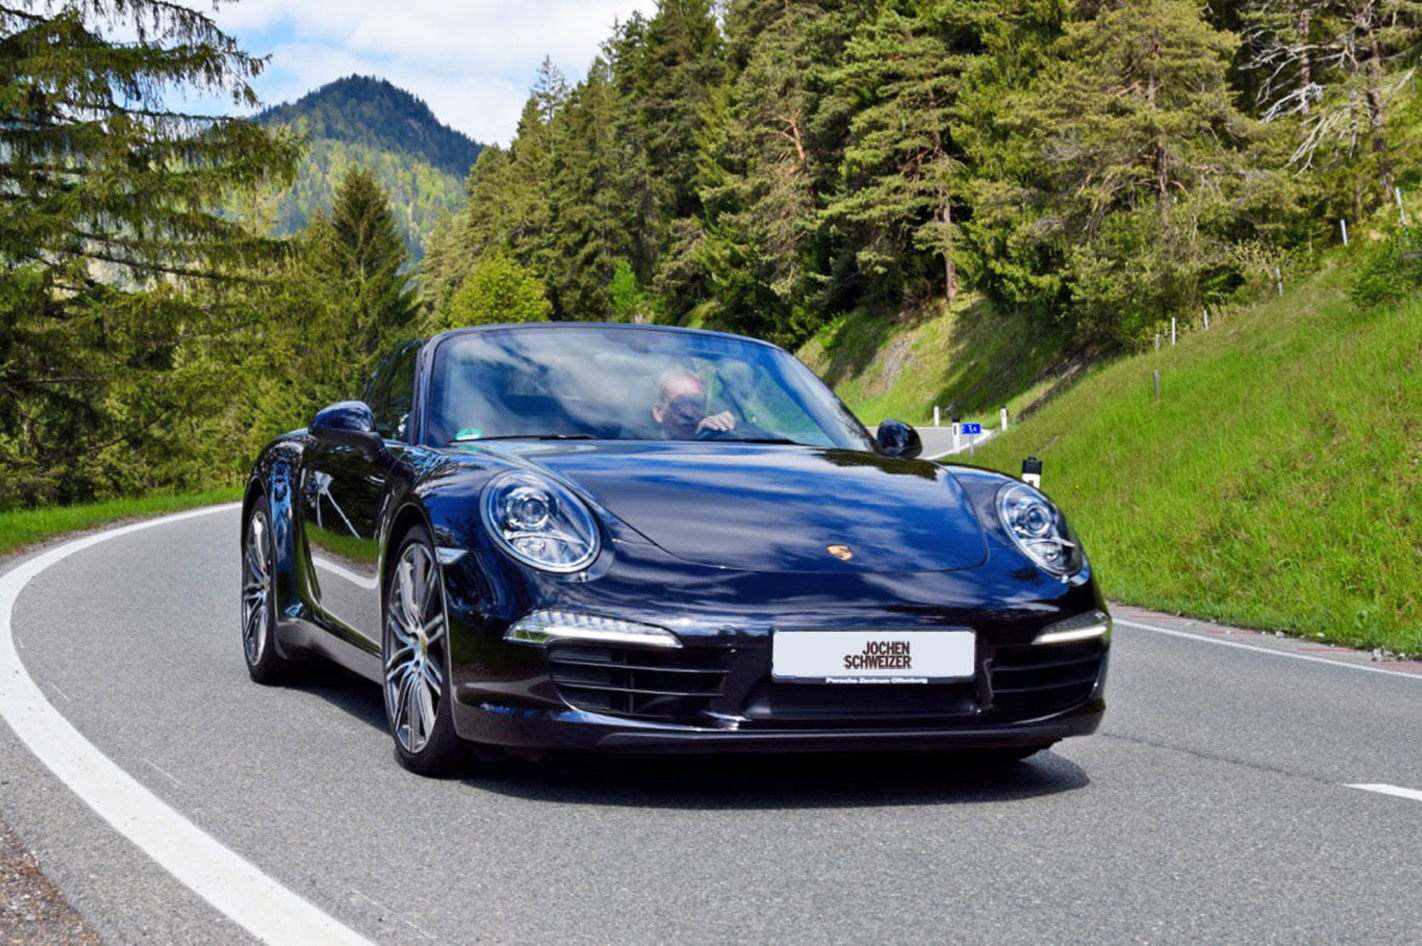 Porsche 911 Cabrio-Tour im Allgäu in Eisenberg